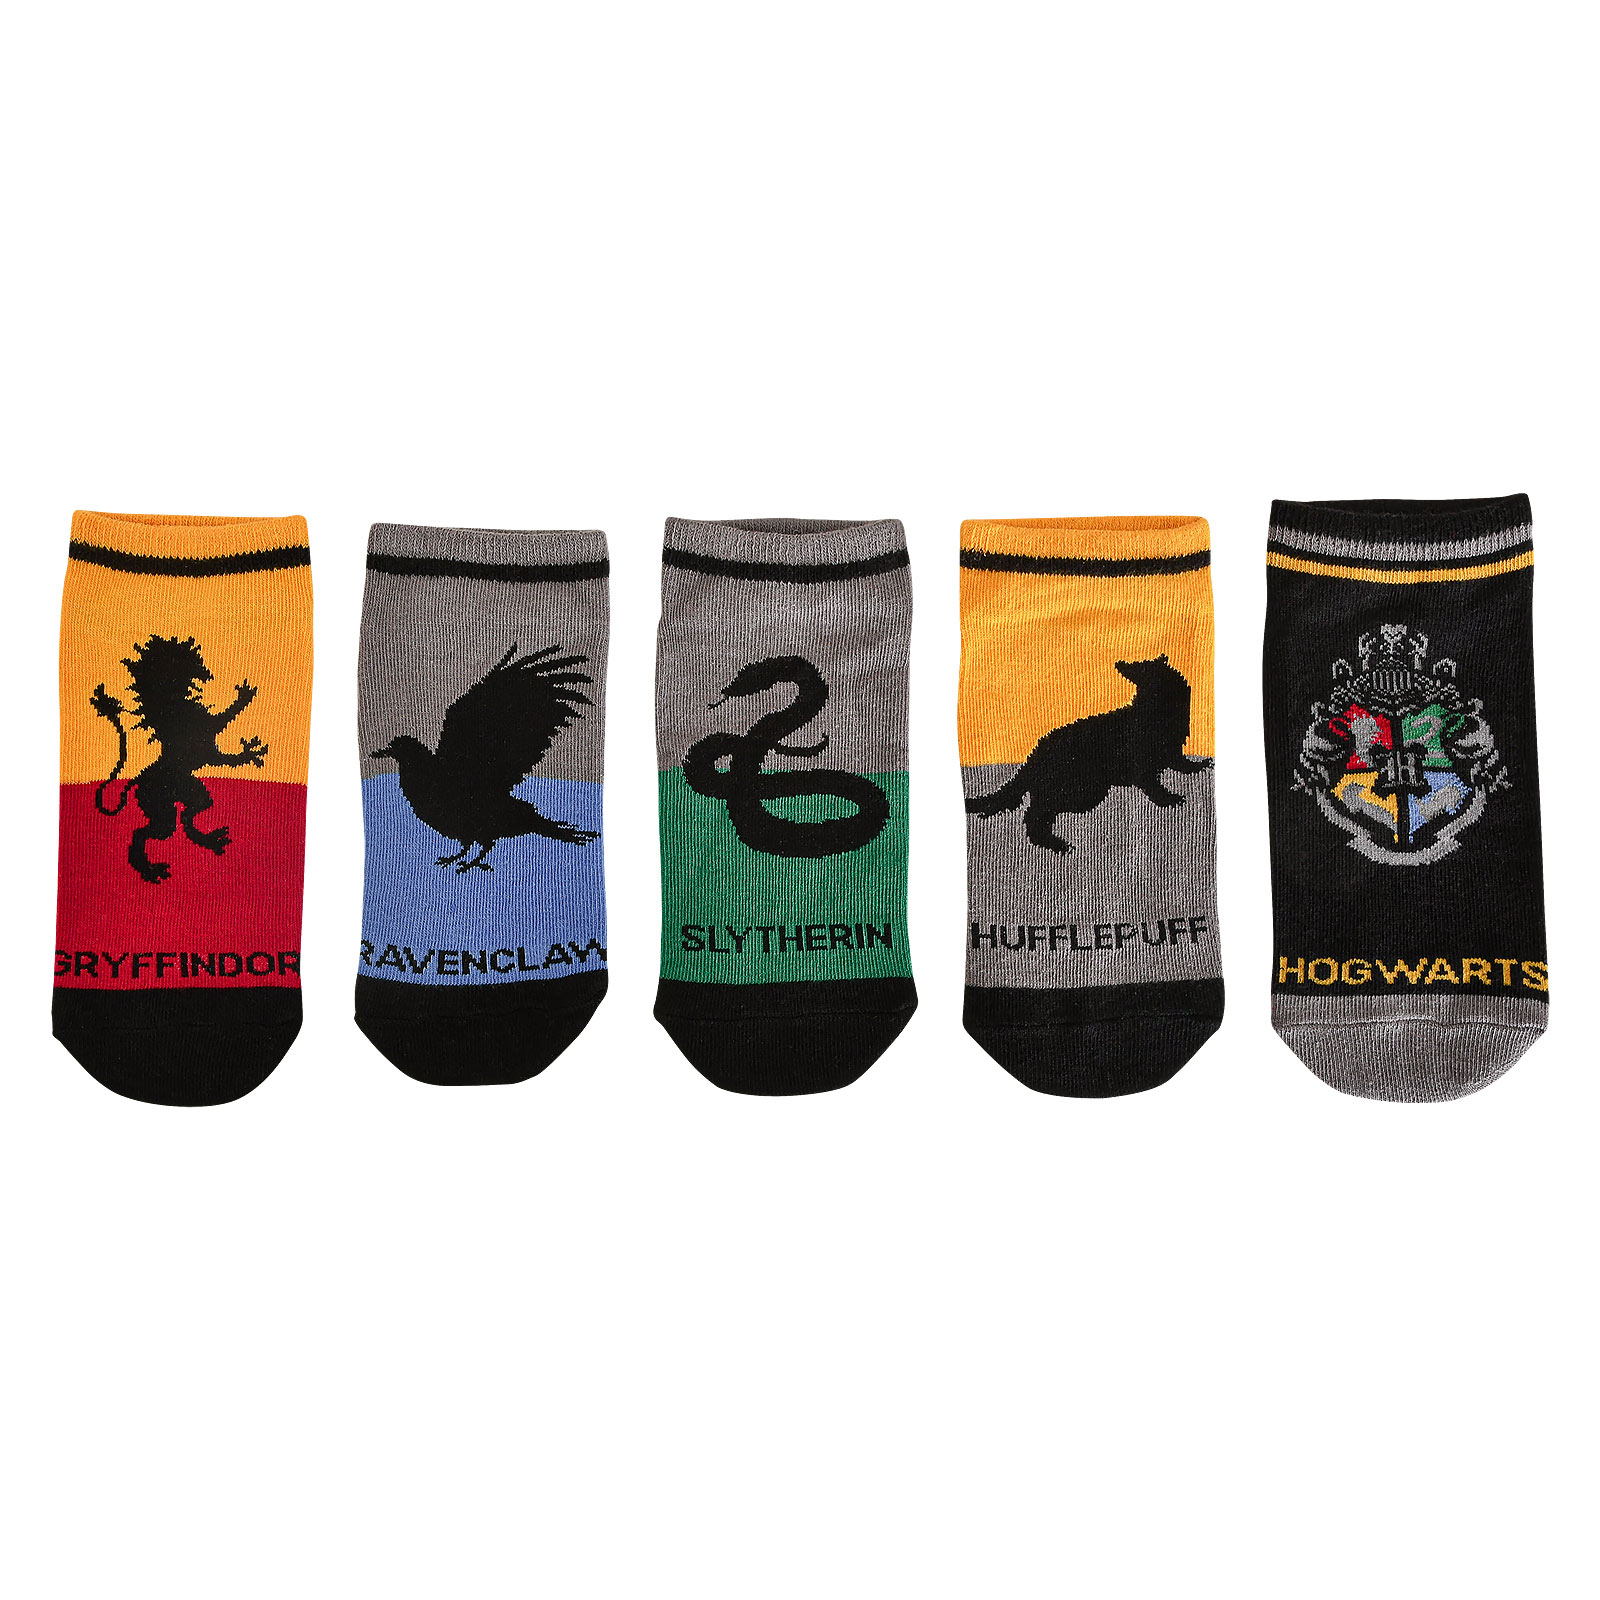 Harry Potter - Hogwarts Socken 5er Set